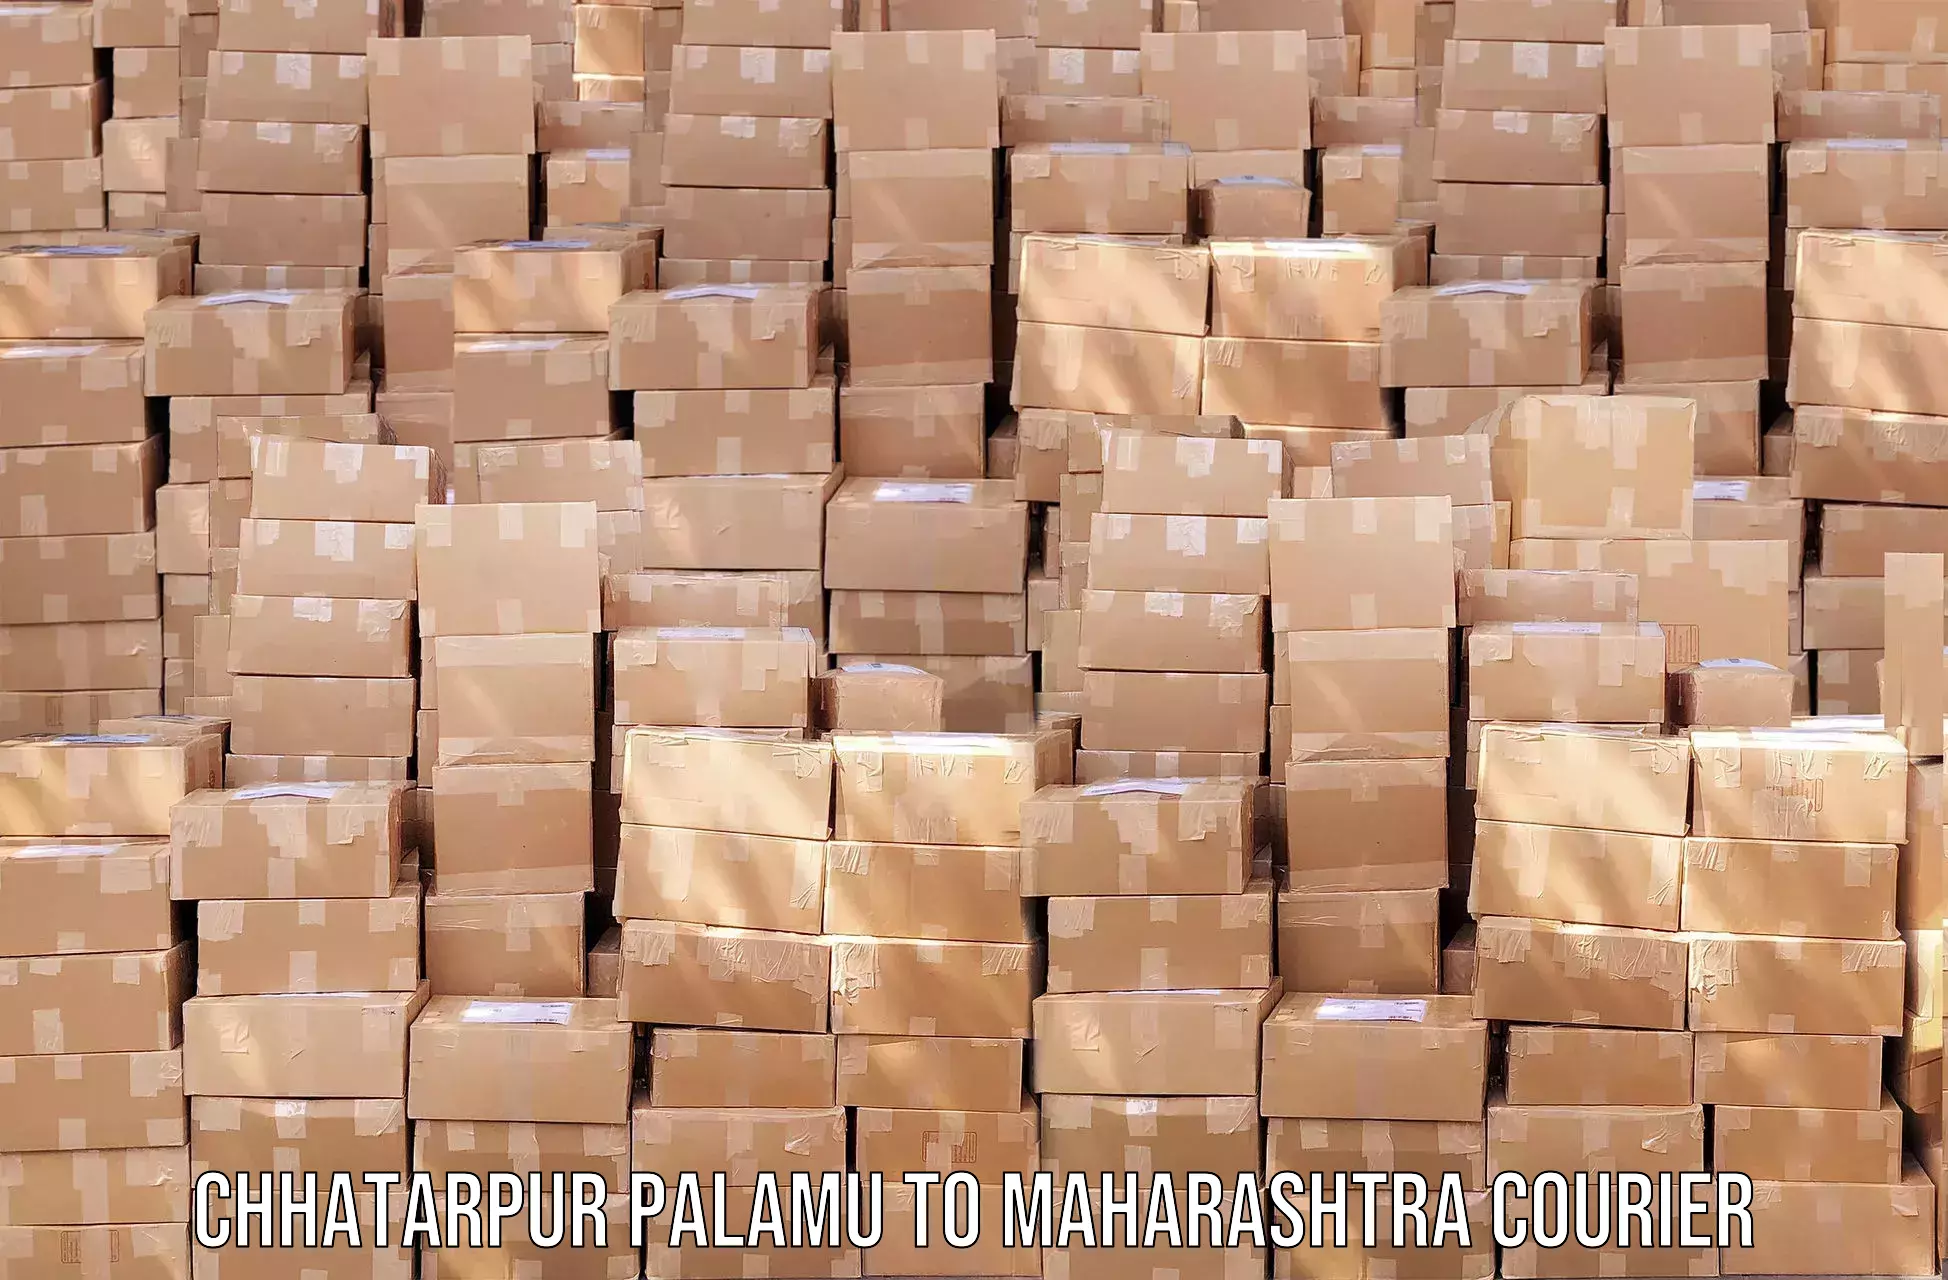 Fast-track shipping solutions Chhatarpur Palamu to Amravati